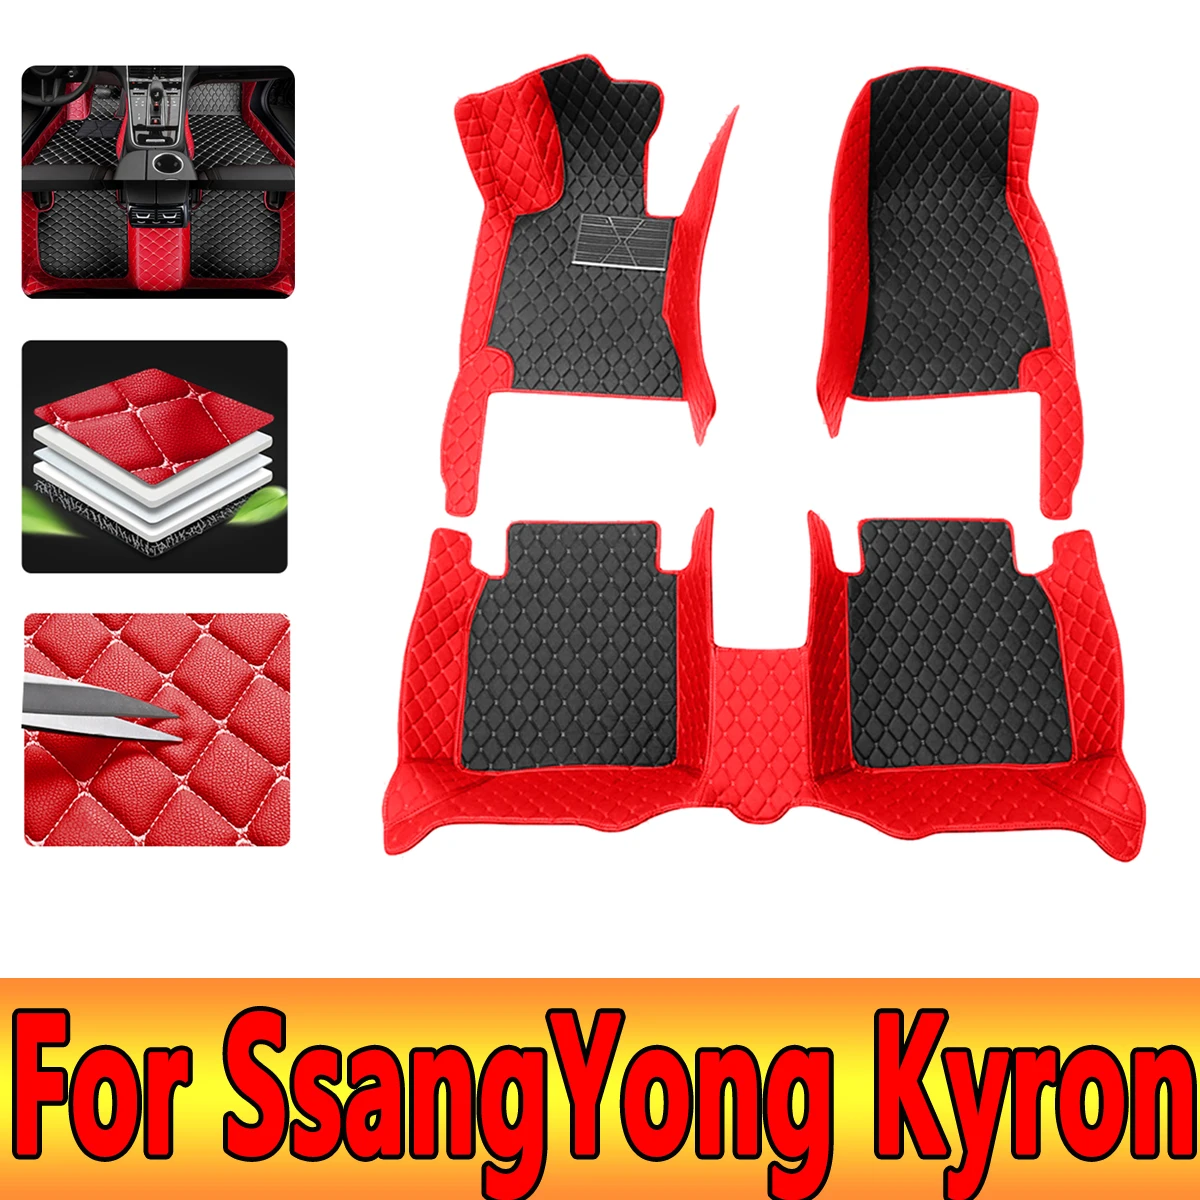 

Автомобильные коврики для SsangYong Kyron 2005 ~ 2014, защитный коврик, роскошные автомобильные коврики, кожаные коврики, набор автомобильных аксессуаров Micro Kyron